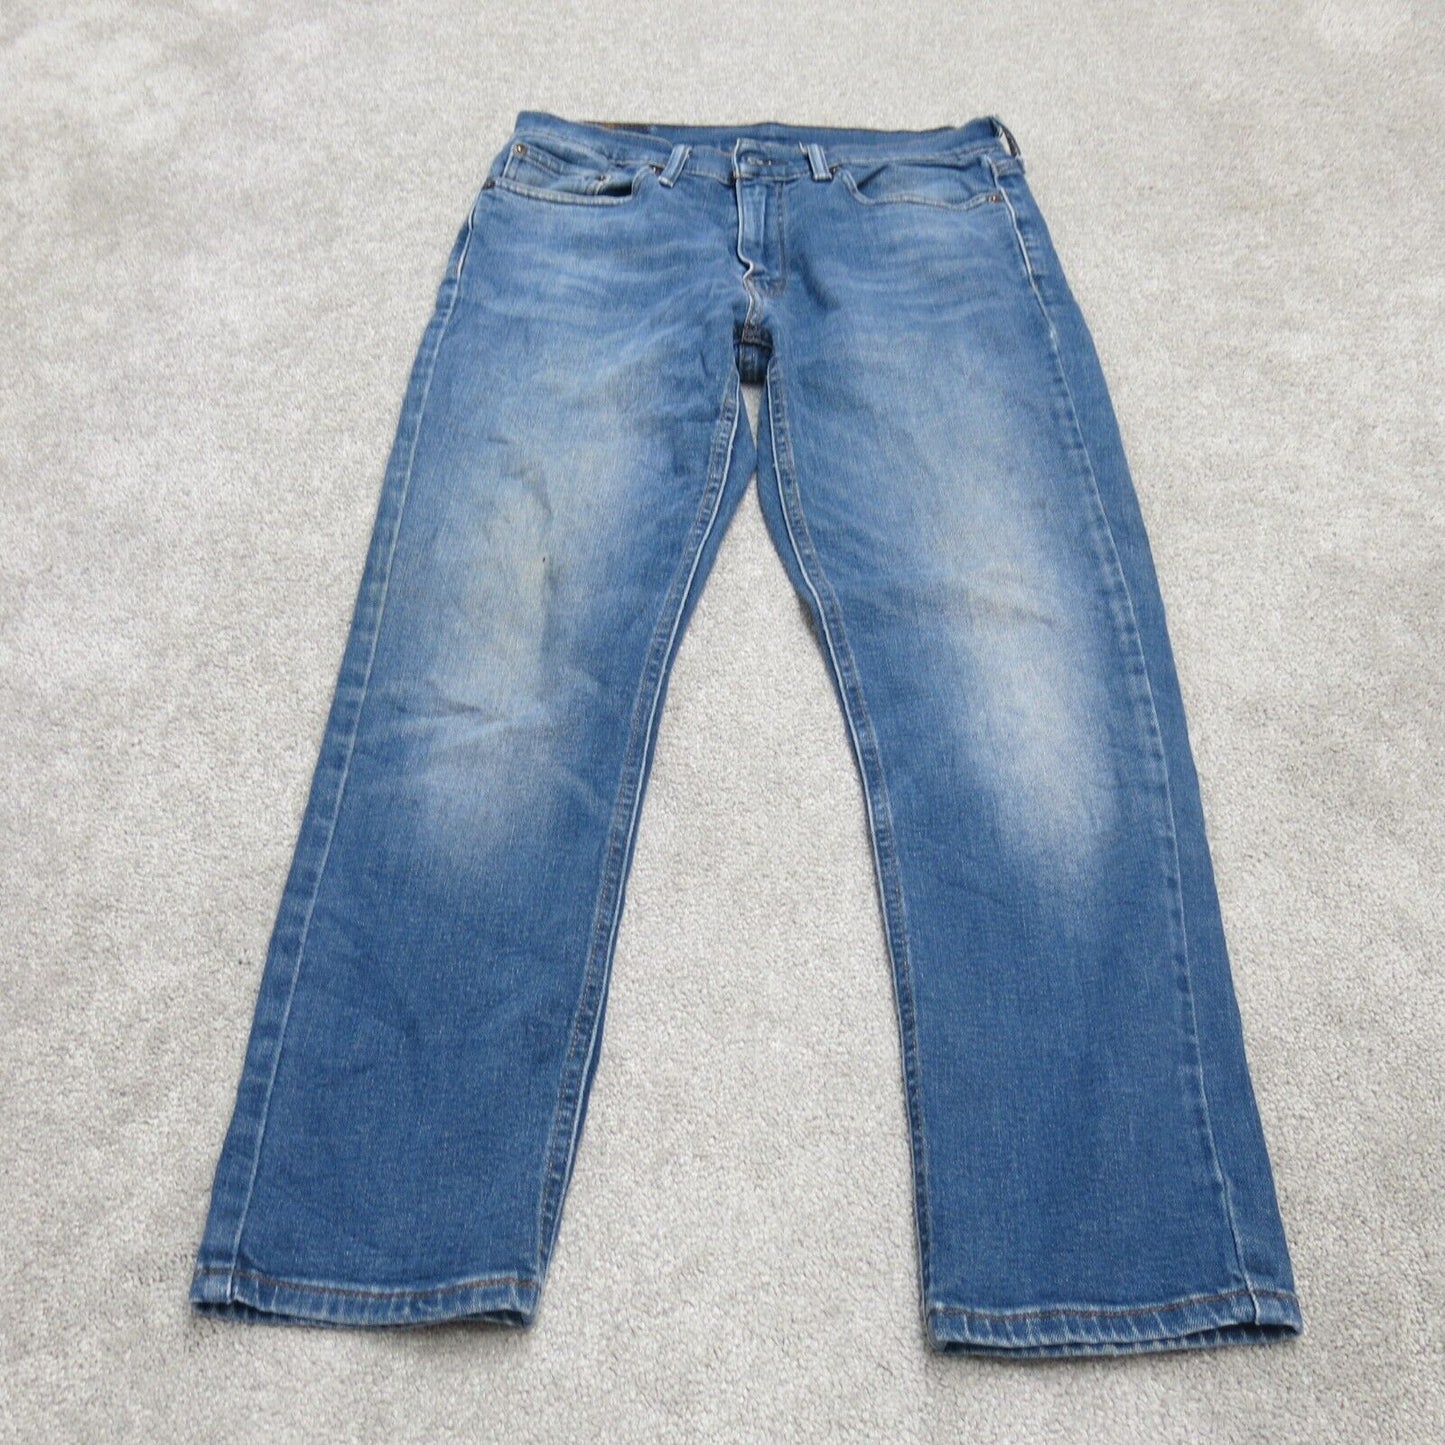 Levis 541 Mens Straight Leg Jeans Denim Stretch Low Rise Blue Size W31XL30